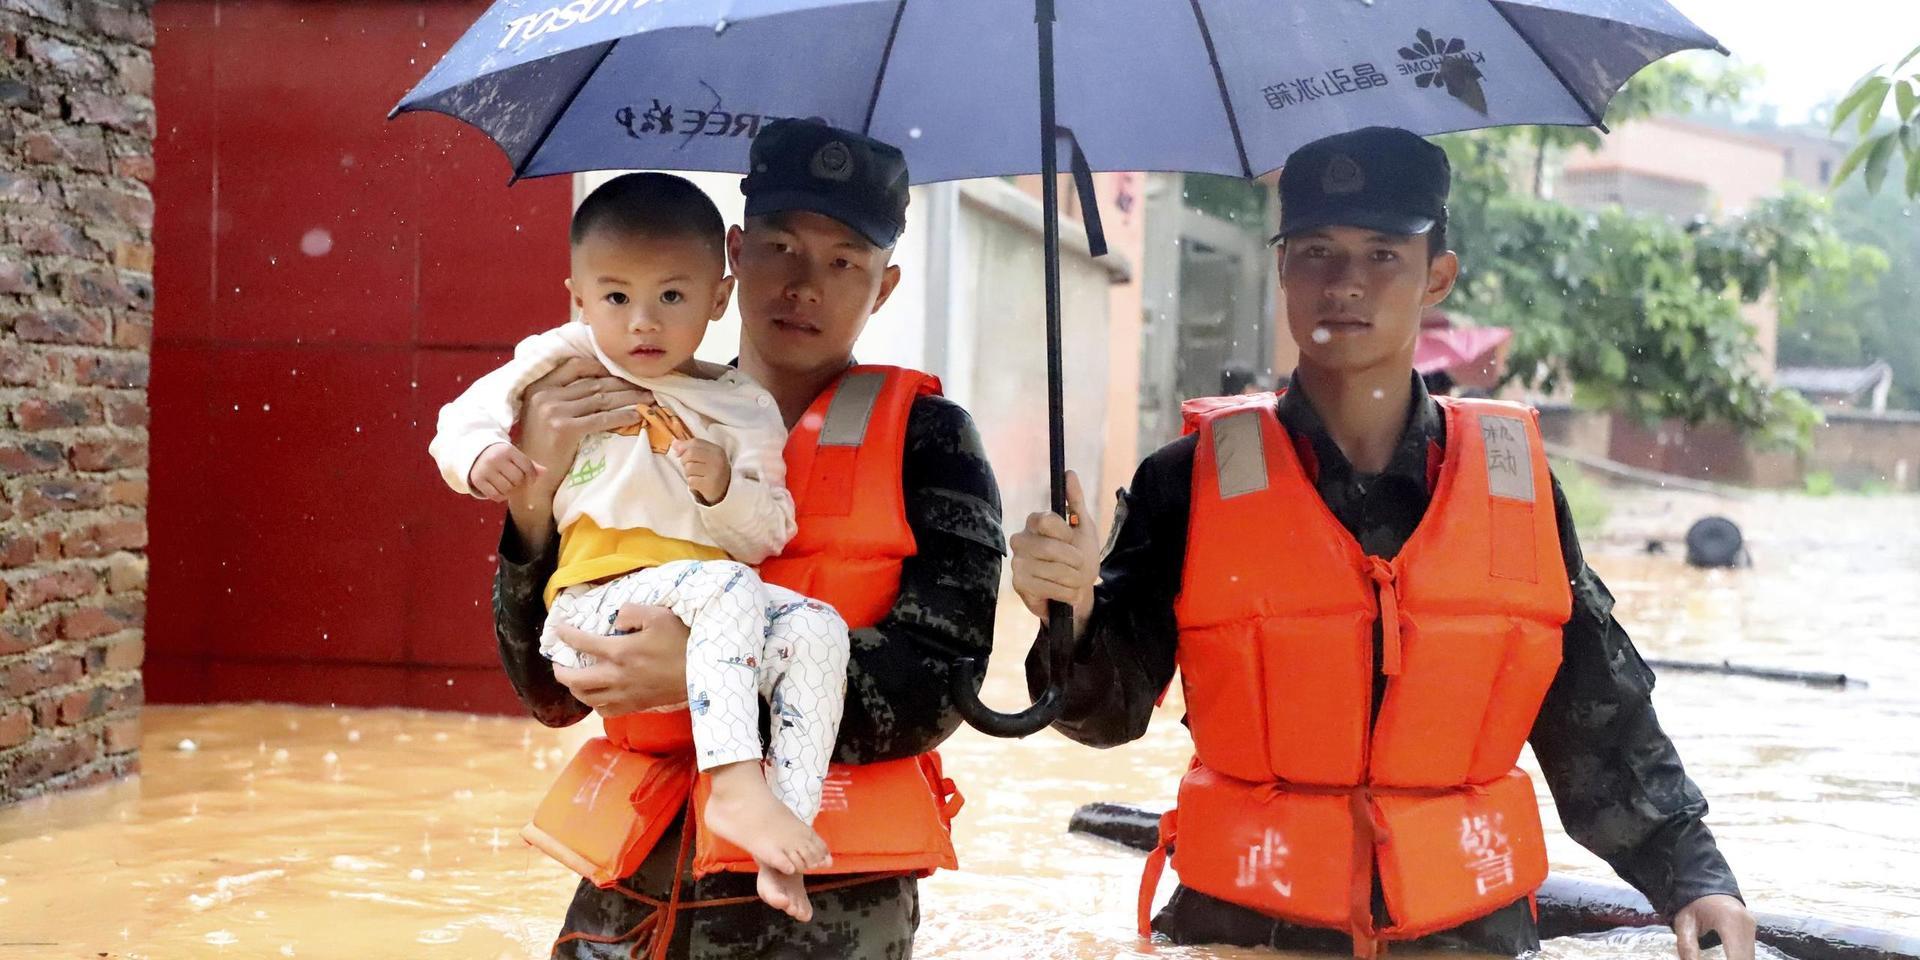 Ett barn evakueras tidigare i veckan i den översvämmade byn Qingyuan i Guangdong-provinsen i södra Kina. 